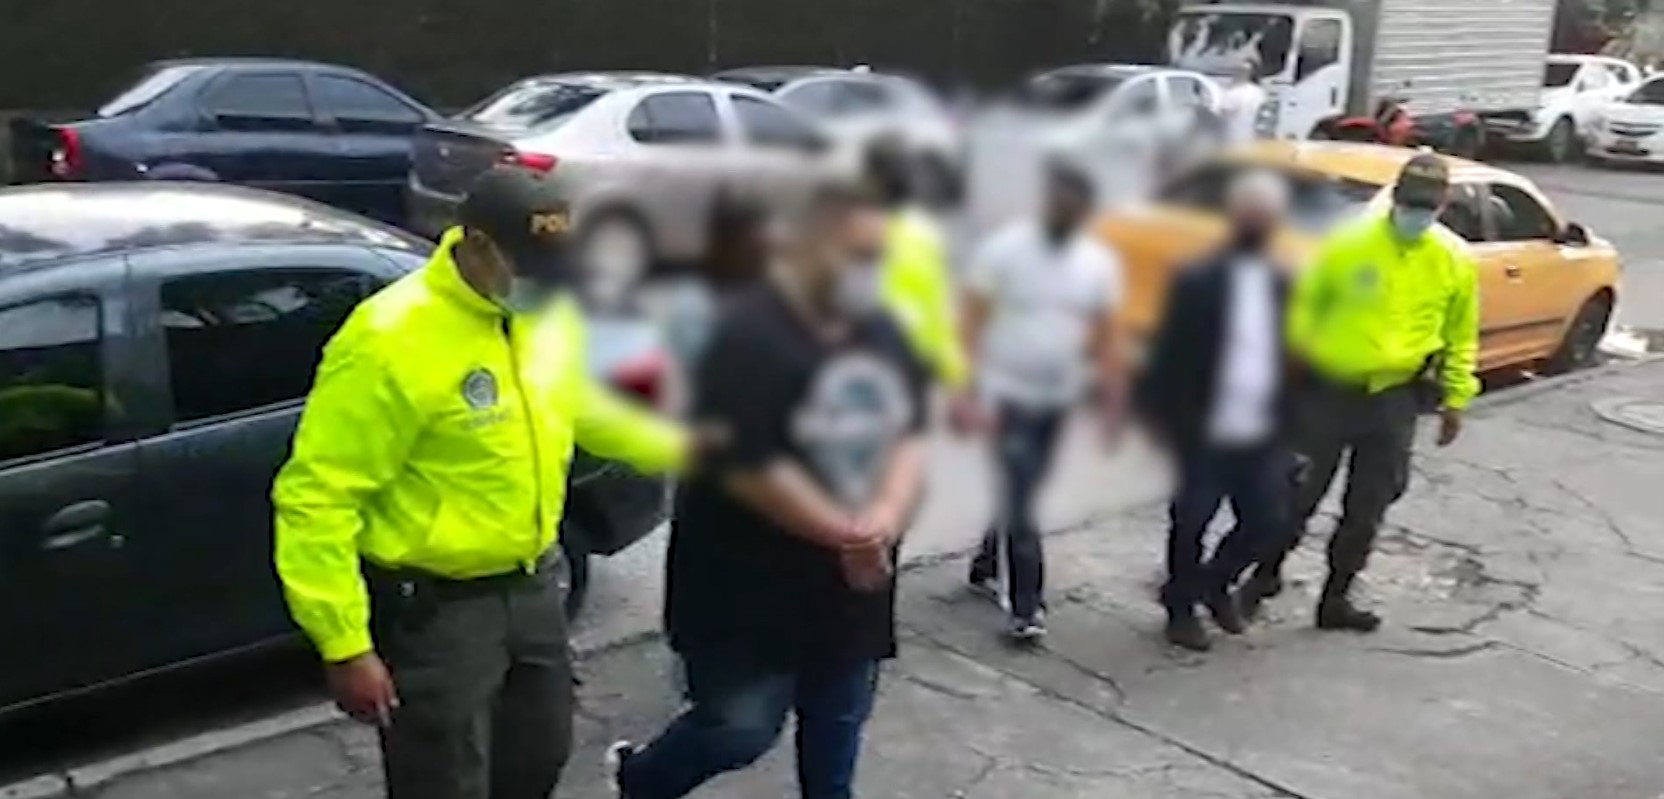 (Video) Capturados 9 responsables de hurto de celulares en Medellín